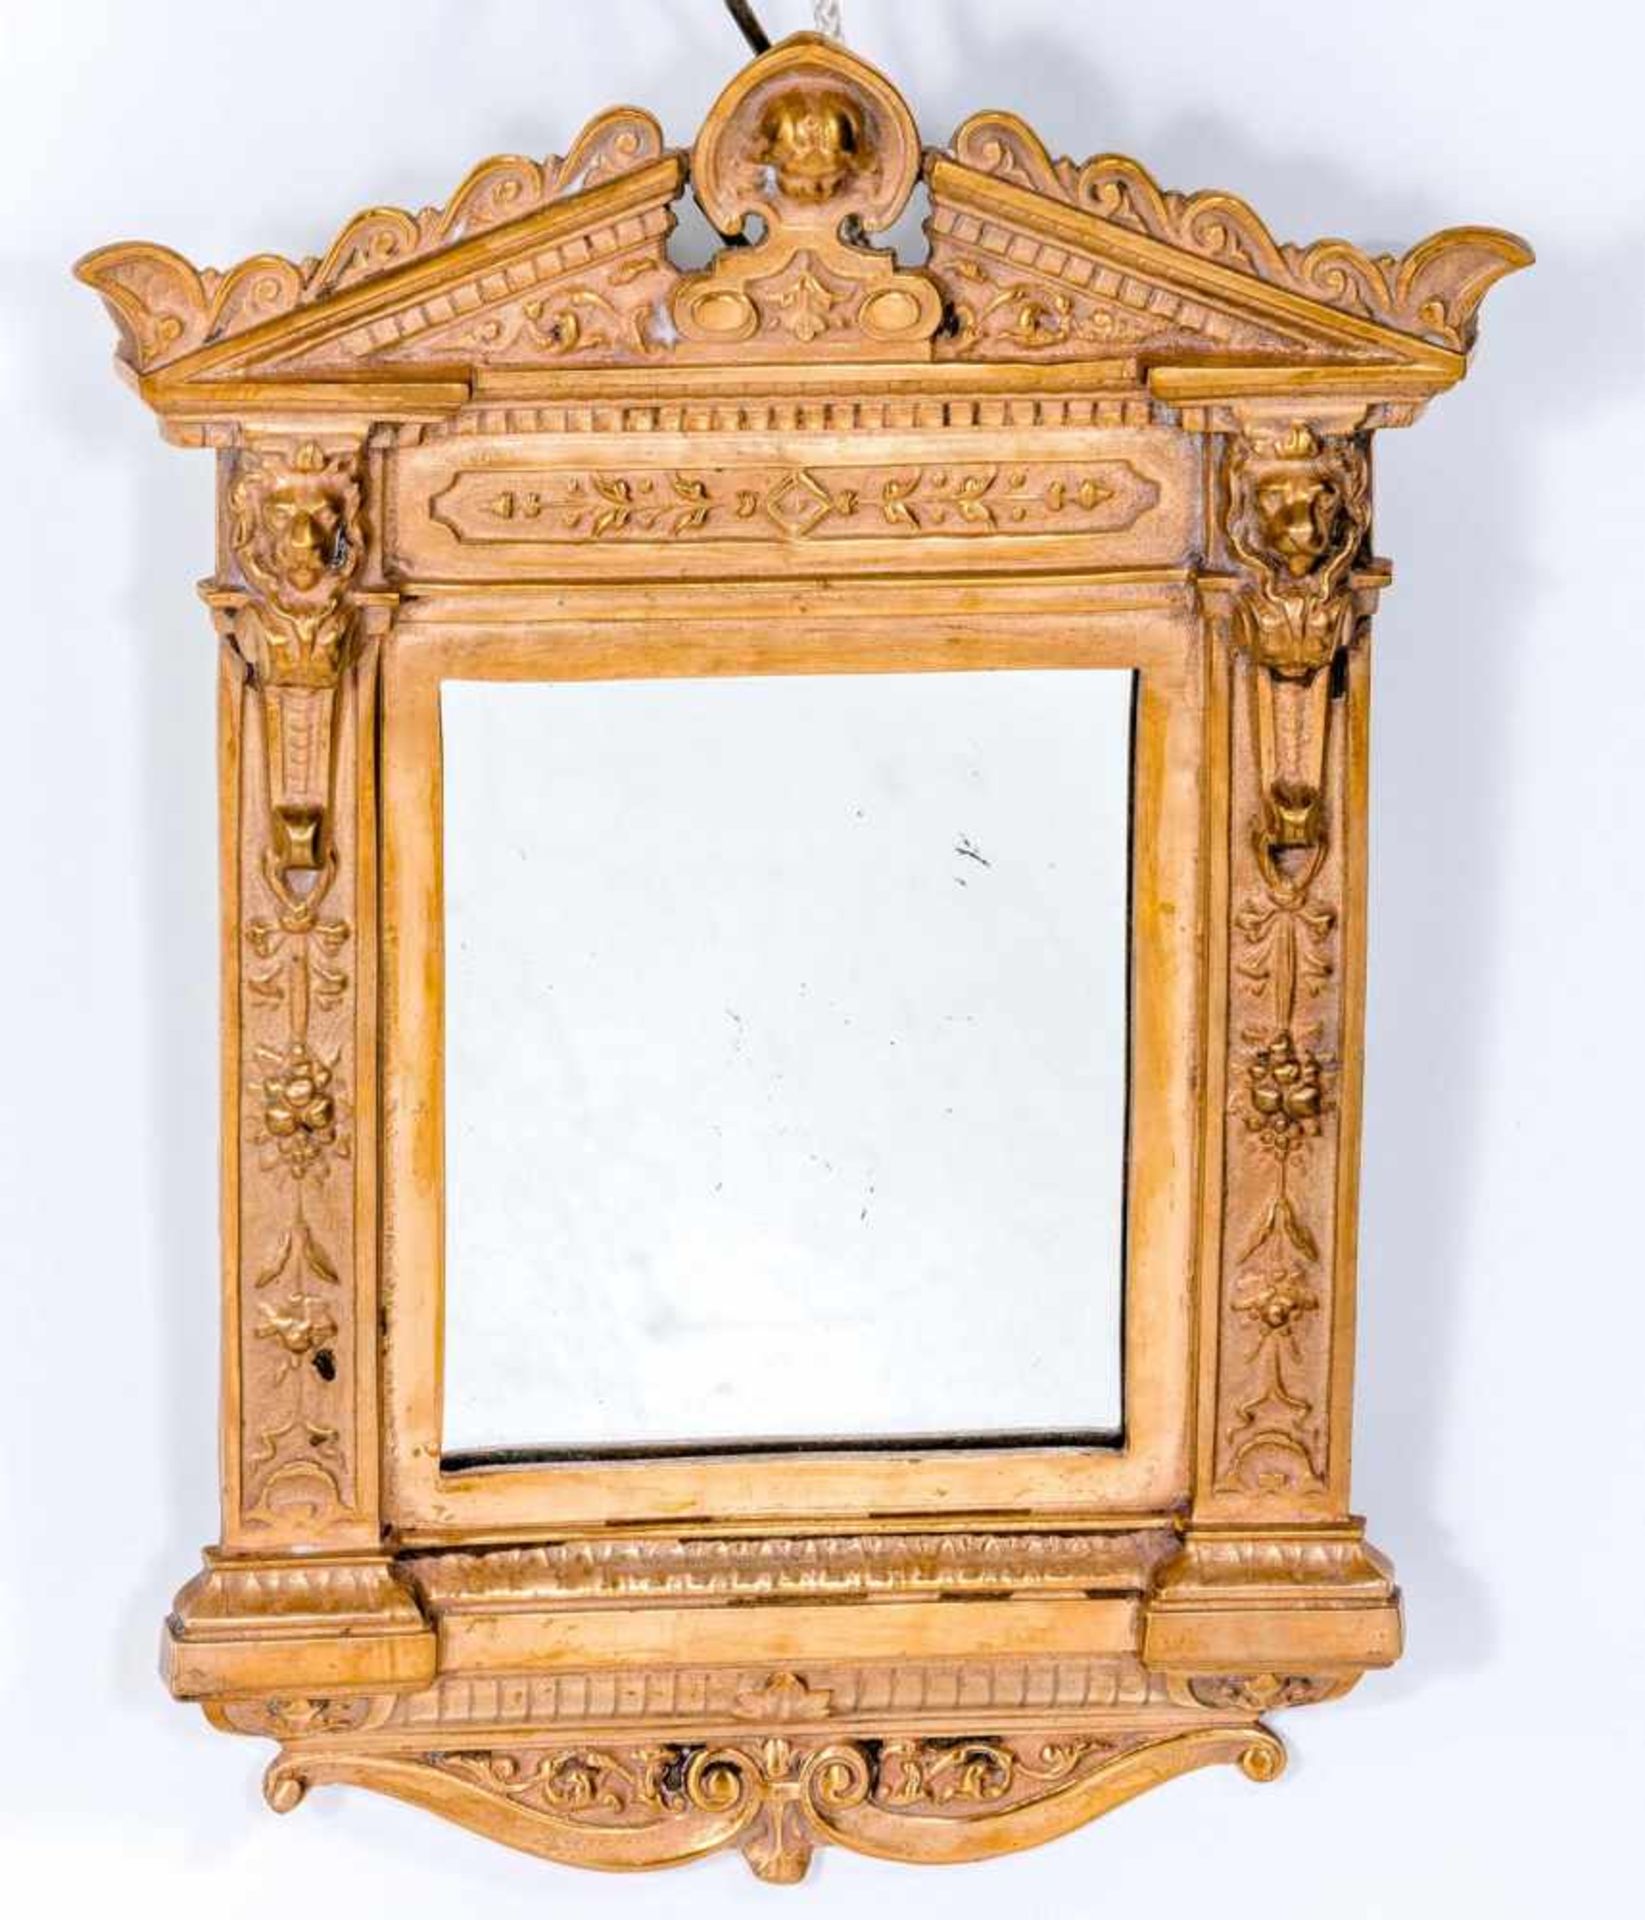 Ein Paar kleine Spiegel im RenaissancestilBronze, vergoldet. Tabernakelrahmen mit Reliefdekor und